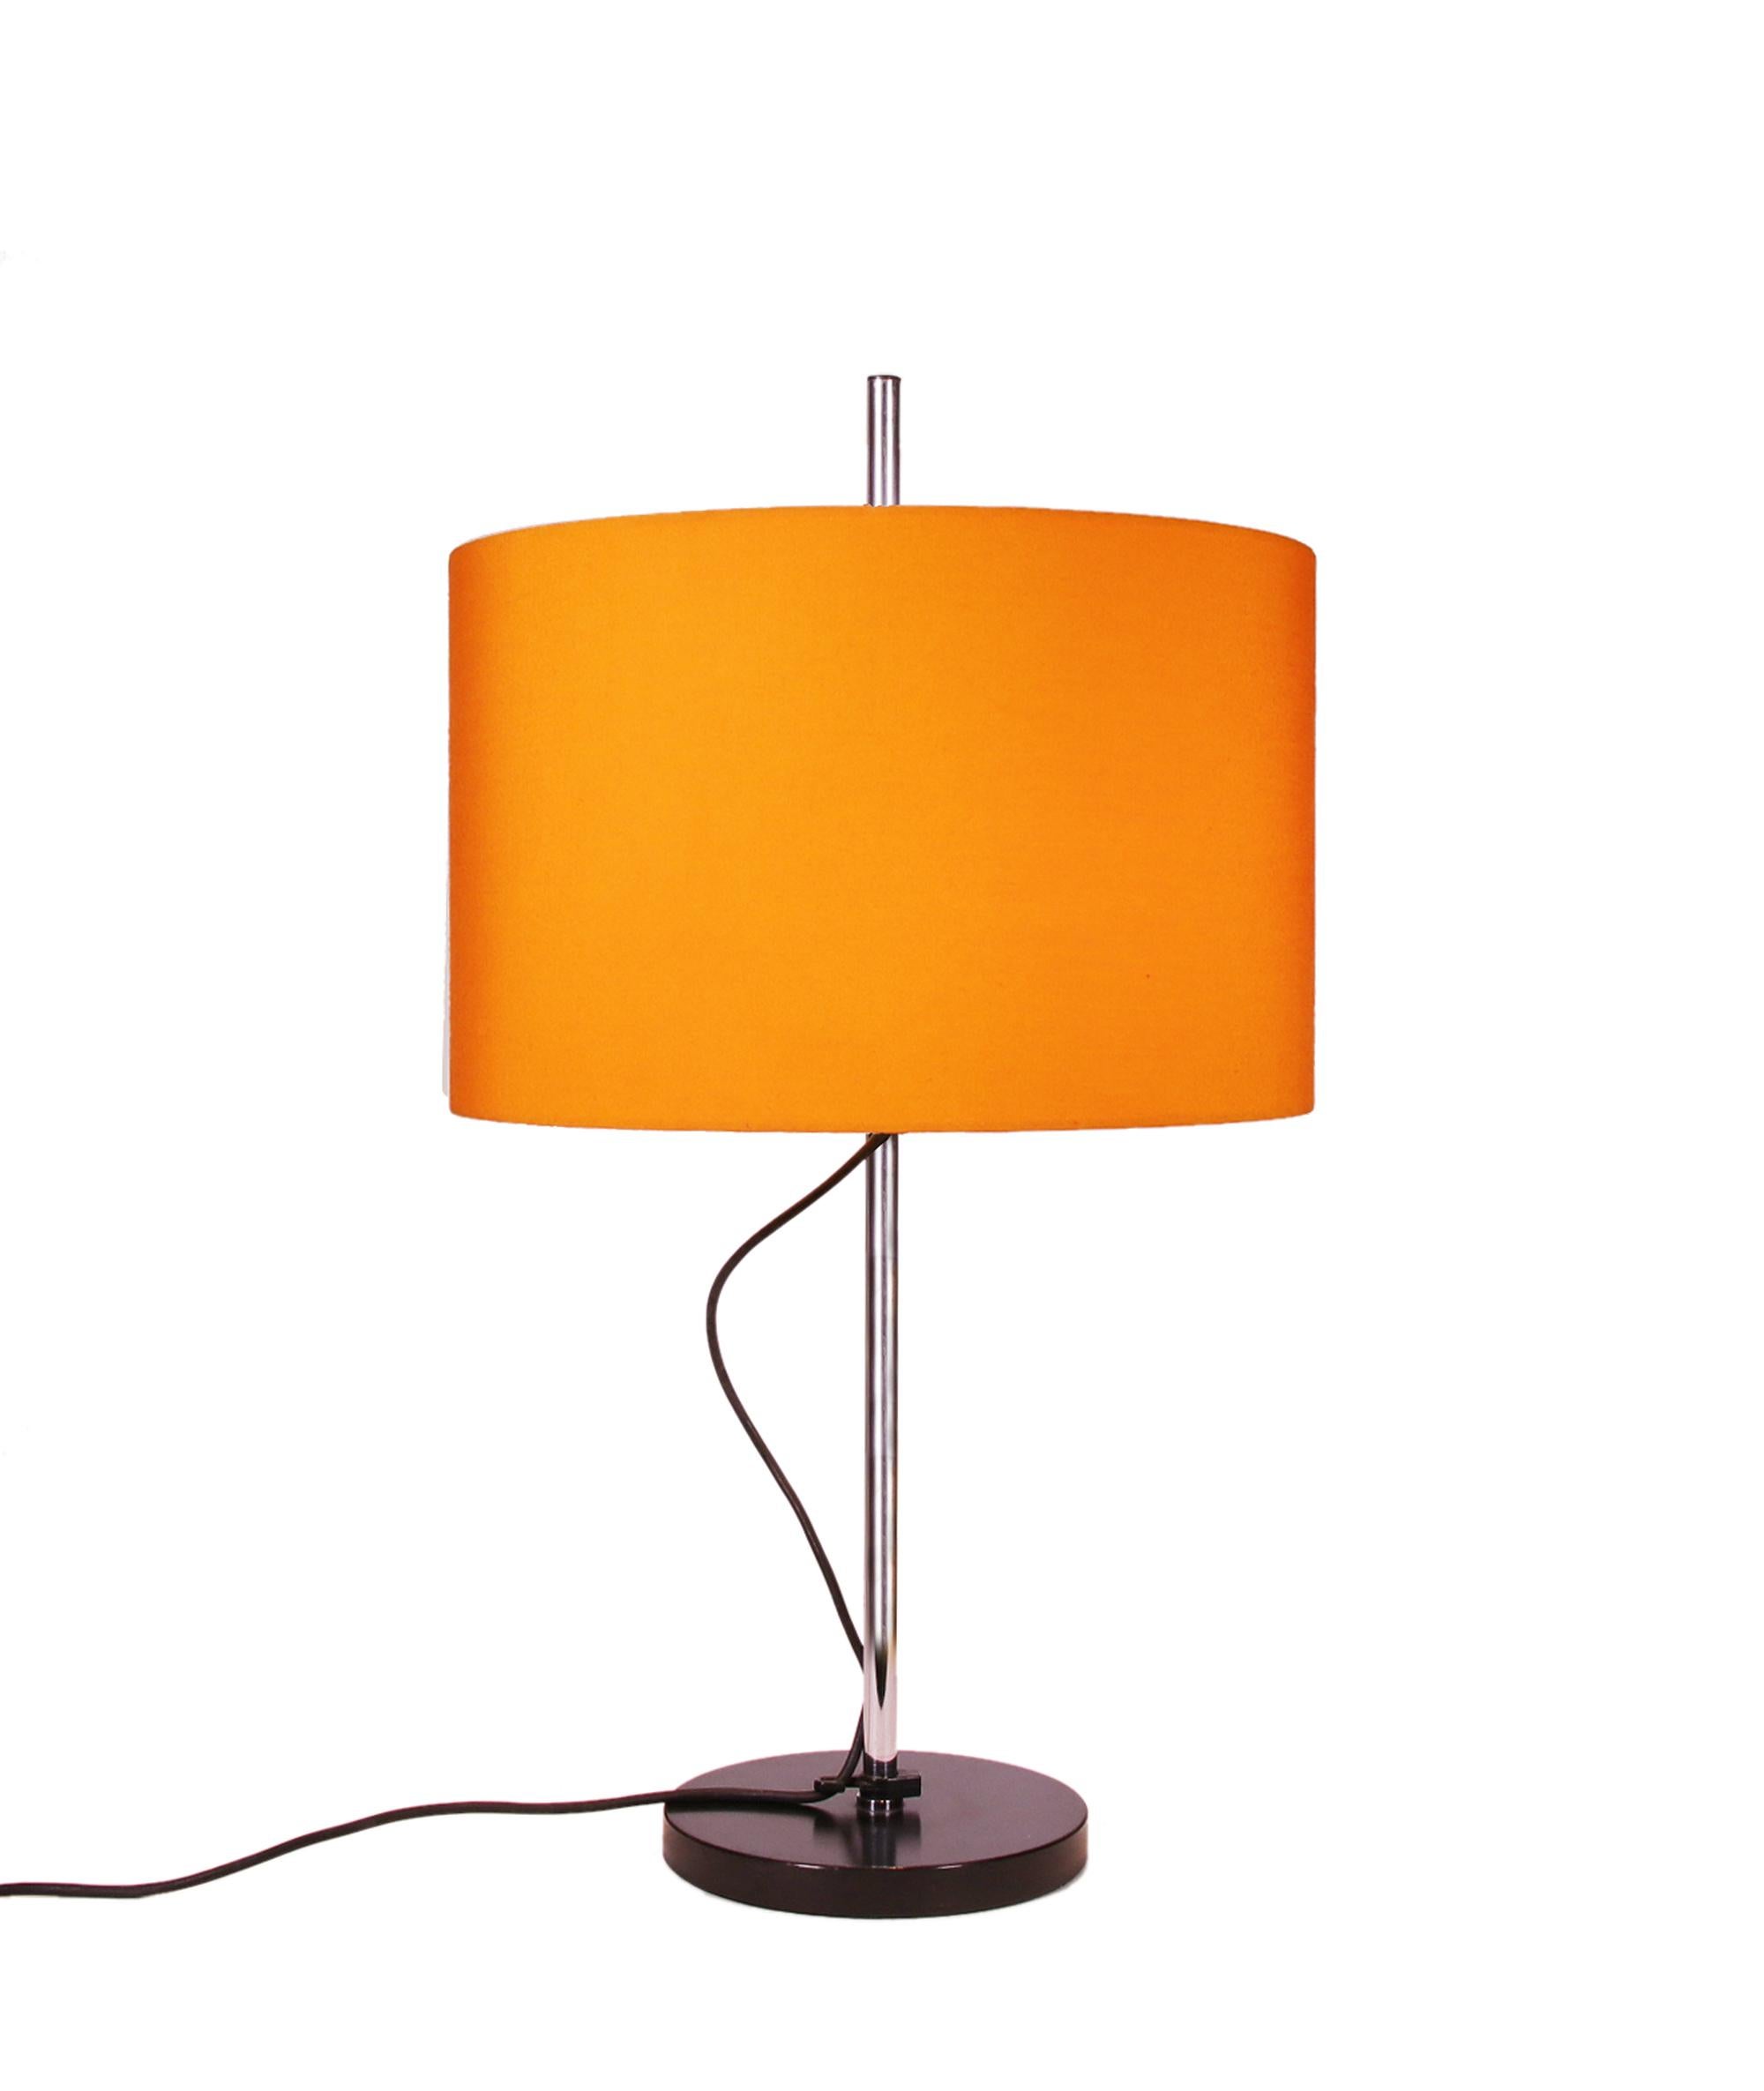 Elegantes Set aus zwei Tischlampen mit verchromter Stahlstange, schwarzem Metallfuß und dem originalen orangefarbenen verstellbaren Lampenschirm. 

Maße: Höhe: 15,75